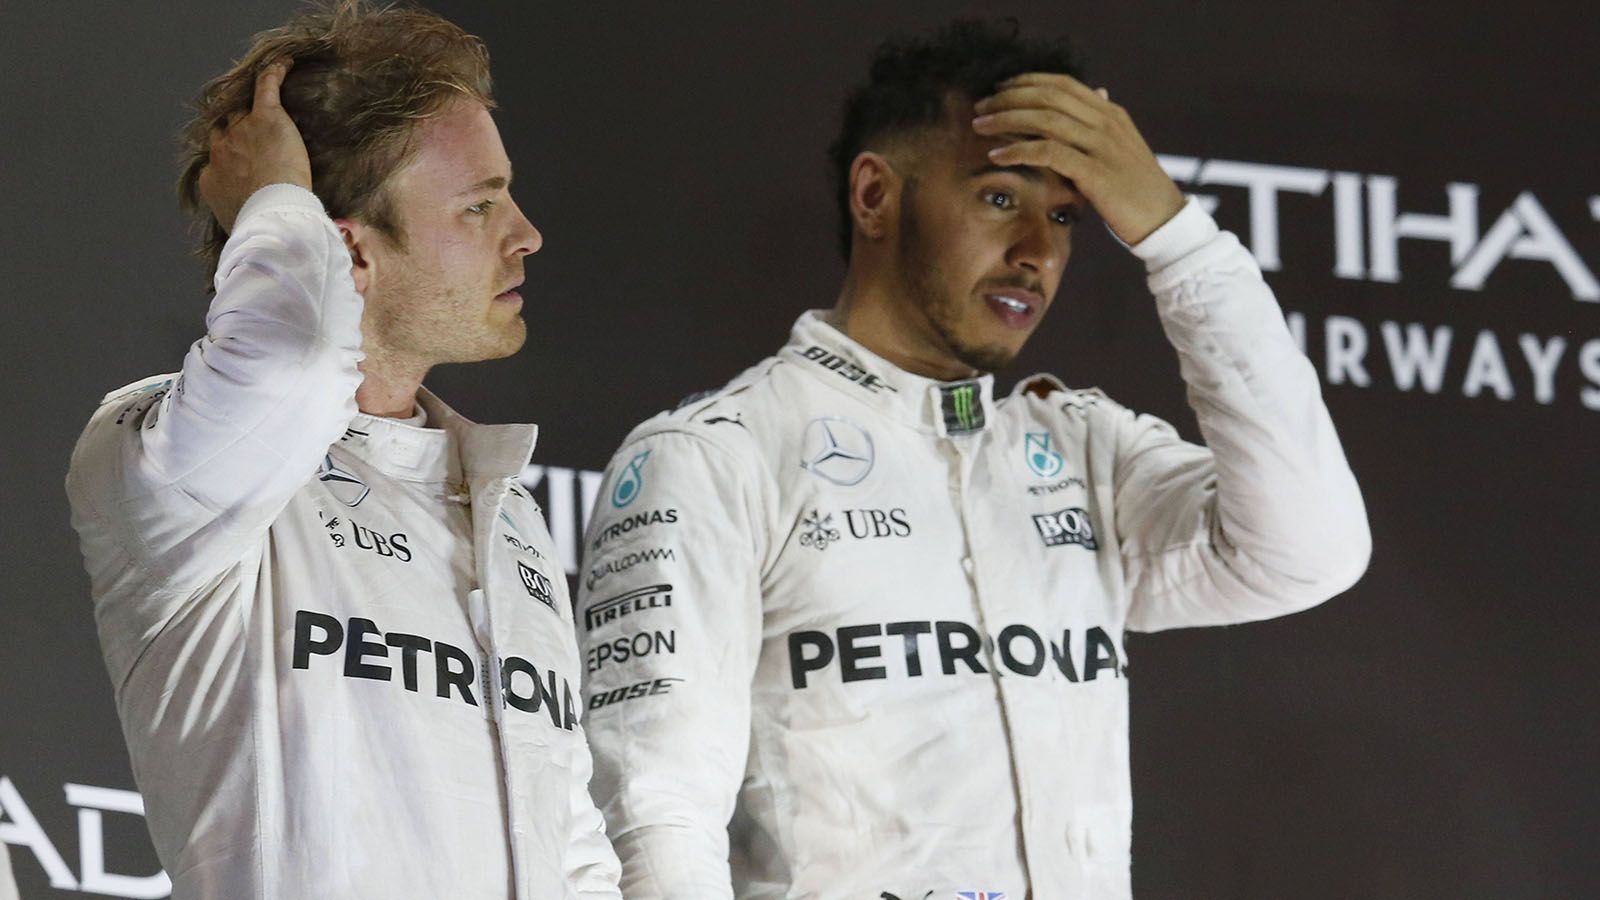 
                <strong>Lewis Hamilton gegen Nico Rosberg (Mercedes)</strong><br>
                Beim Saisonfinale in Abu Dhabi, Rosberg war als WM-Führender in das Rennen gegangen, versuchte Hamilton extra langsam zu fahren, um es anderen Fahrern zu ermöglichen, an Rosberg vorbeizuziehen. Der Plan des Briten ging nicht auf und Rosberg krönte sich zum Champion und verkündete wenig später sein überraschendes Karriereende. Aus ehemaligen Freunden waren innerhalb von nur vier Jahren erbitterte Feinde geworden. Immerhin: Rosberg erklärte in einem Q&A auf seinem YouTube-Kanal, dass er hoffe, die Freundschaft eines Tages wieder zu fixen. Diese hatte Hamilton nach dem Qualifying 2014 in Monaco beendet, nachdem Rosberg absichtlich eine Gelbe Flagge ausgelöst hatte, um zu verhindern, dass sein Teamkollege sich die Pole Position schnappt.
              